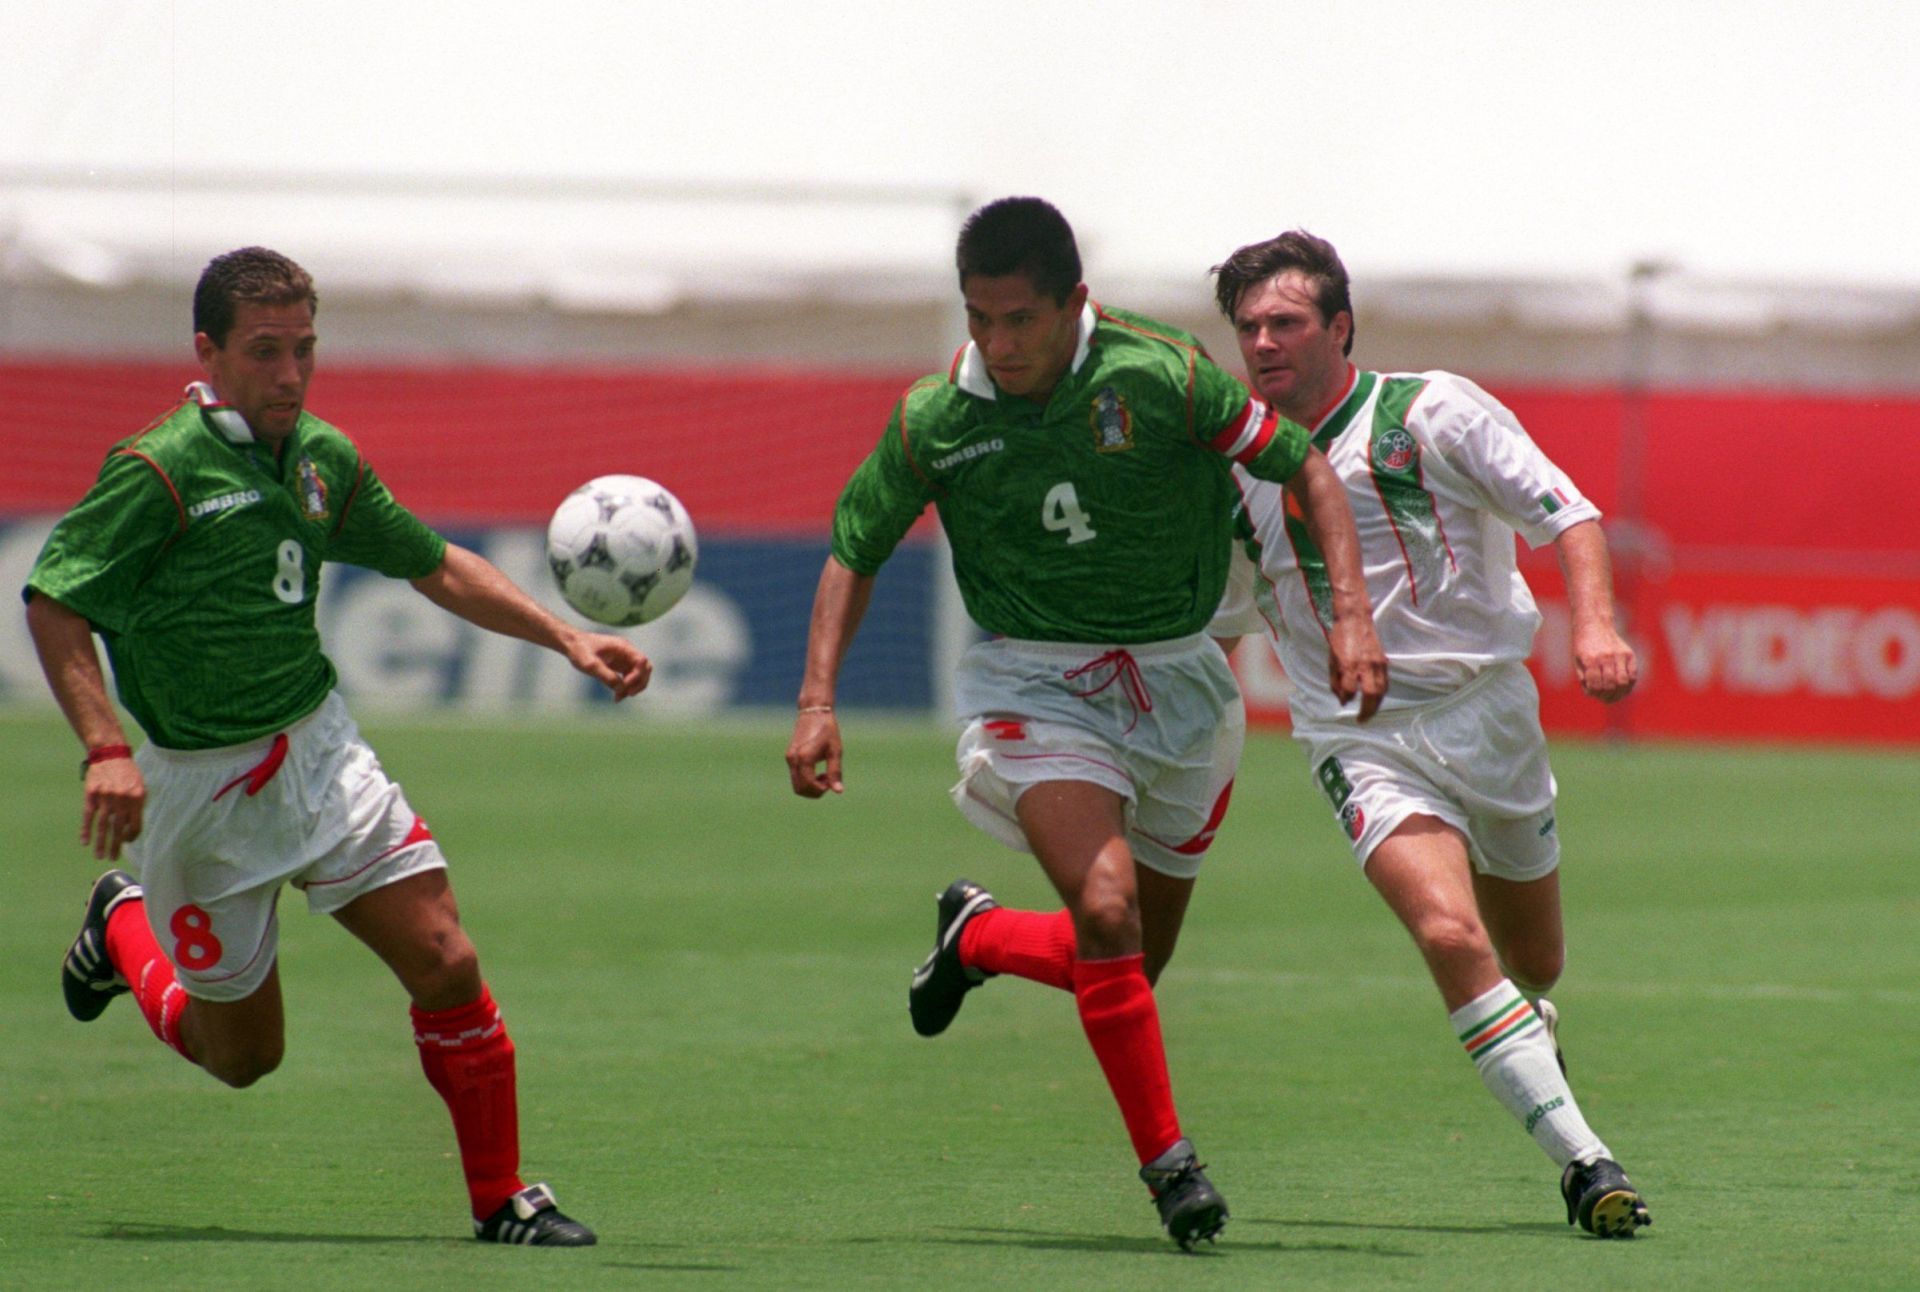 IRELAND V MEXICO at the 1994 FIFA World Cup